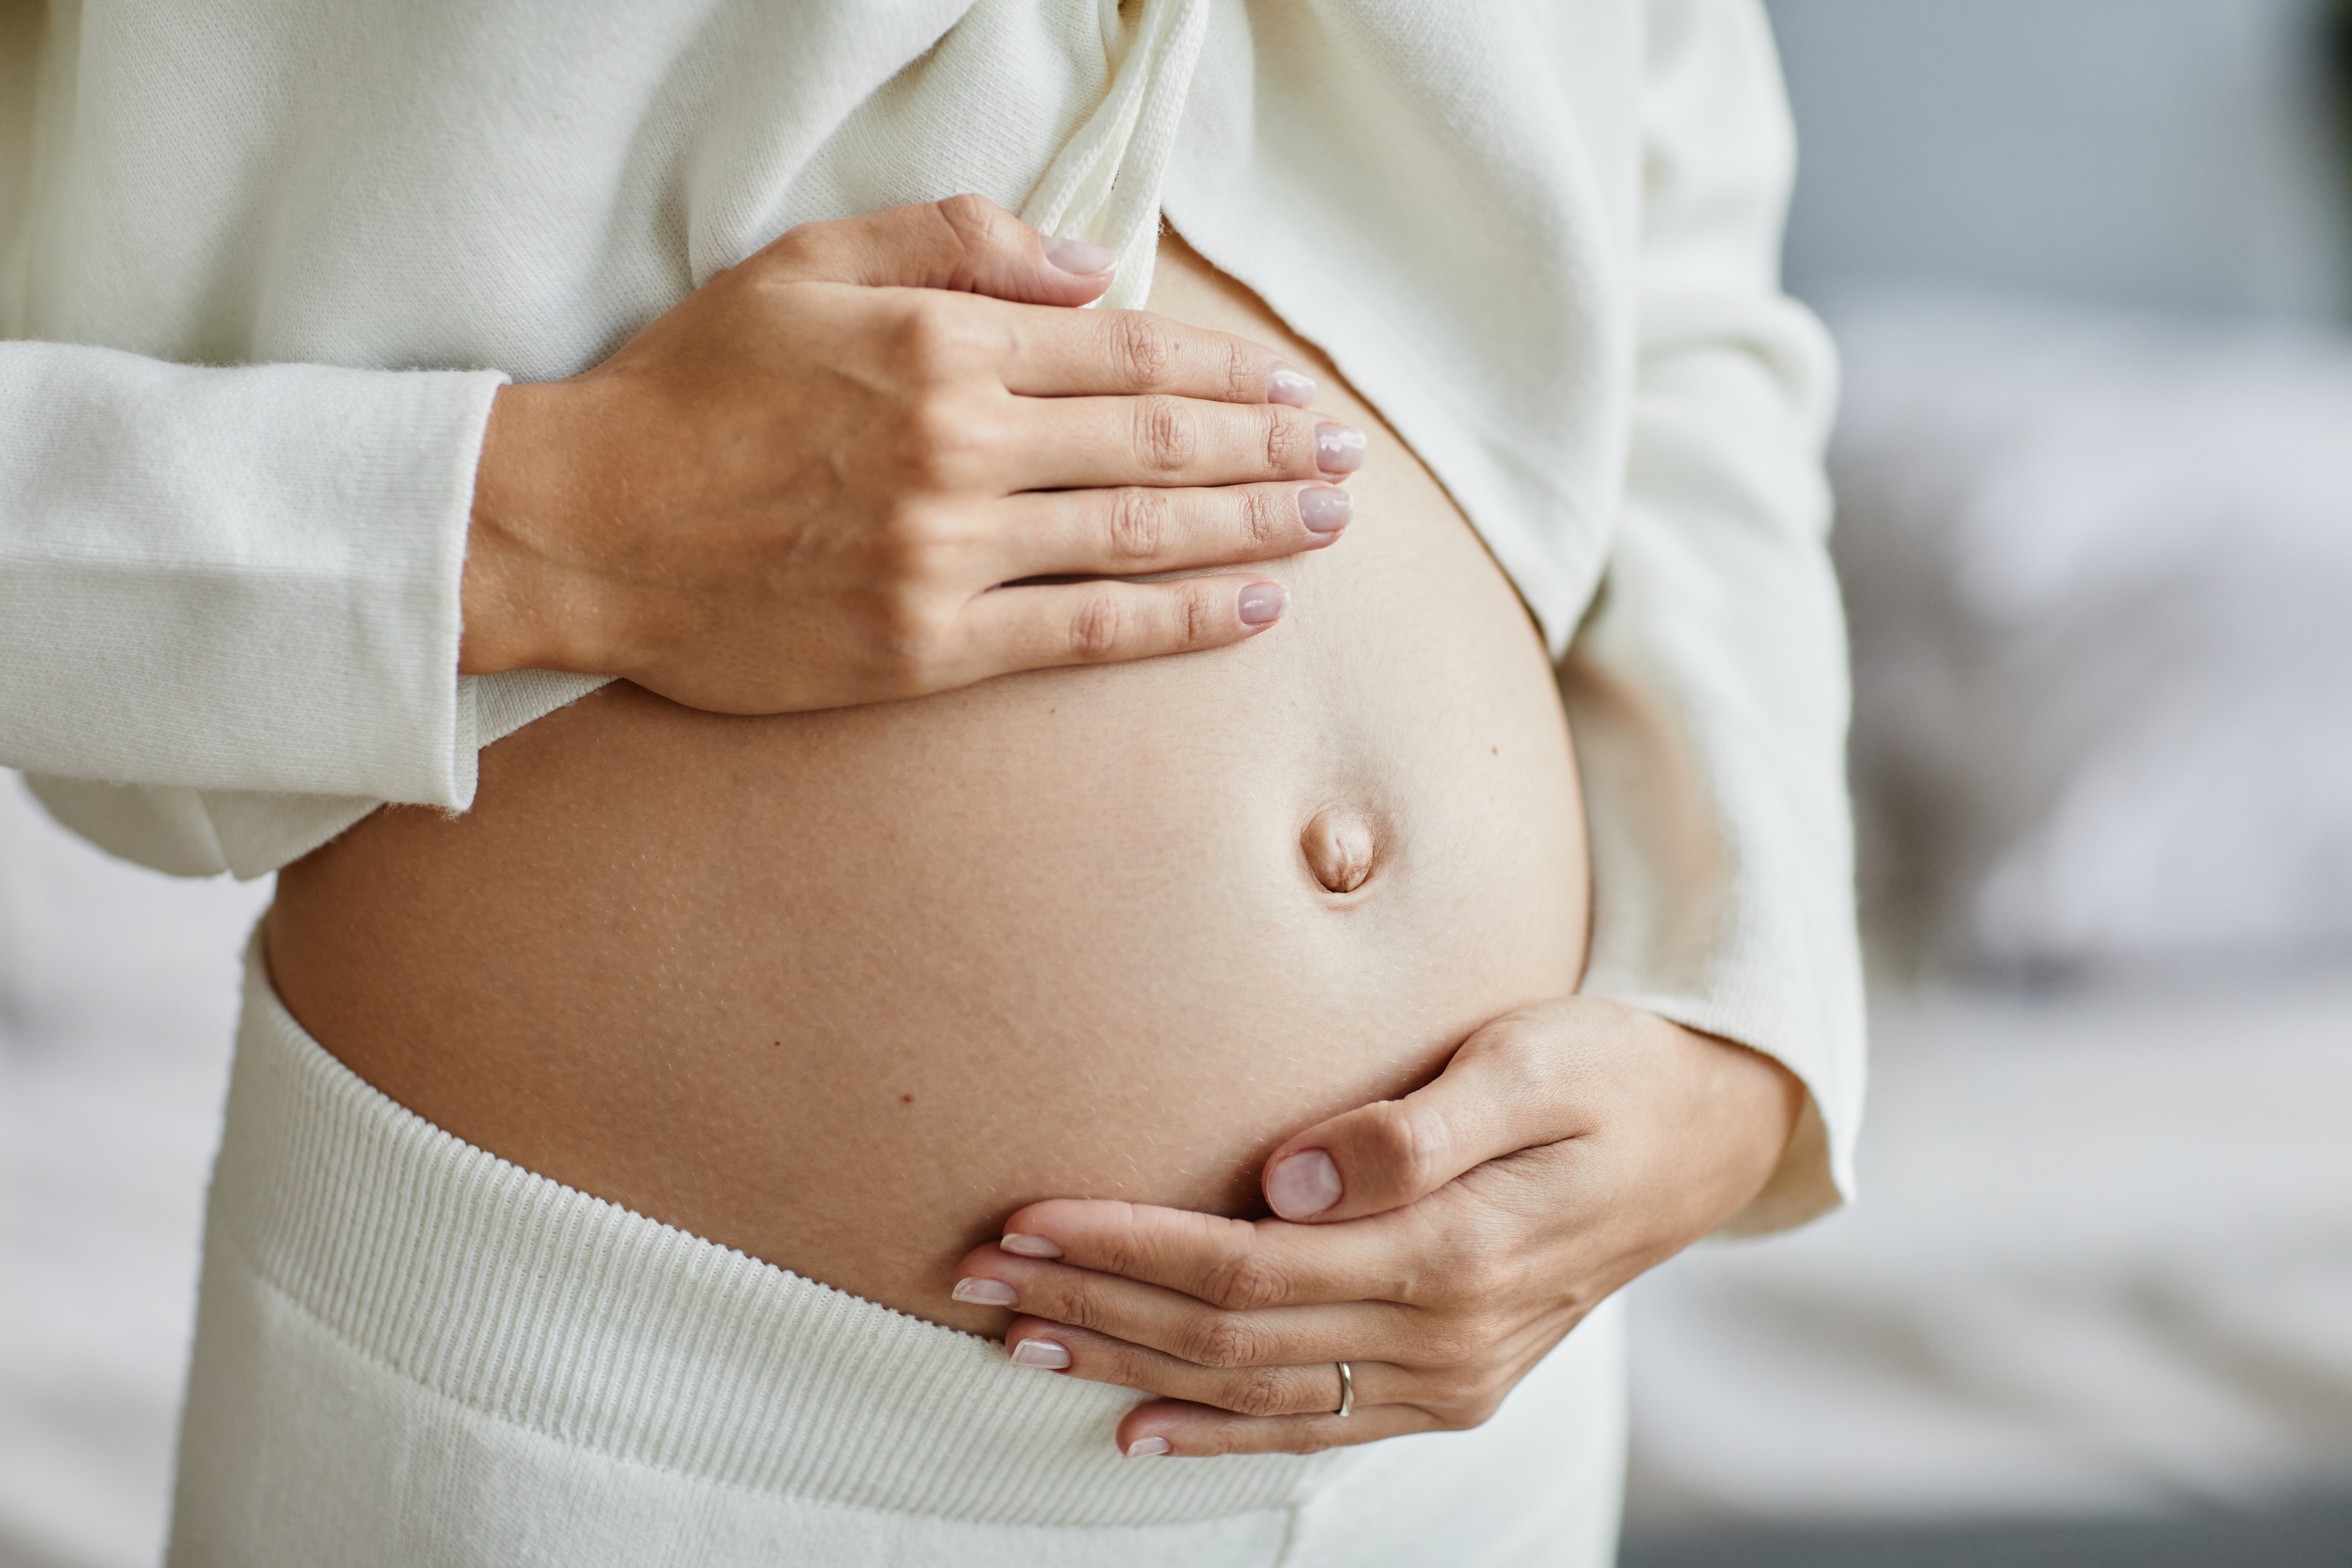 Femme enceinte se tenant le ventre | Source : Shutterstock